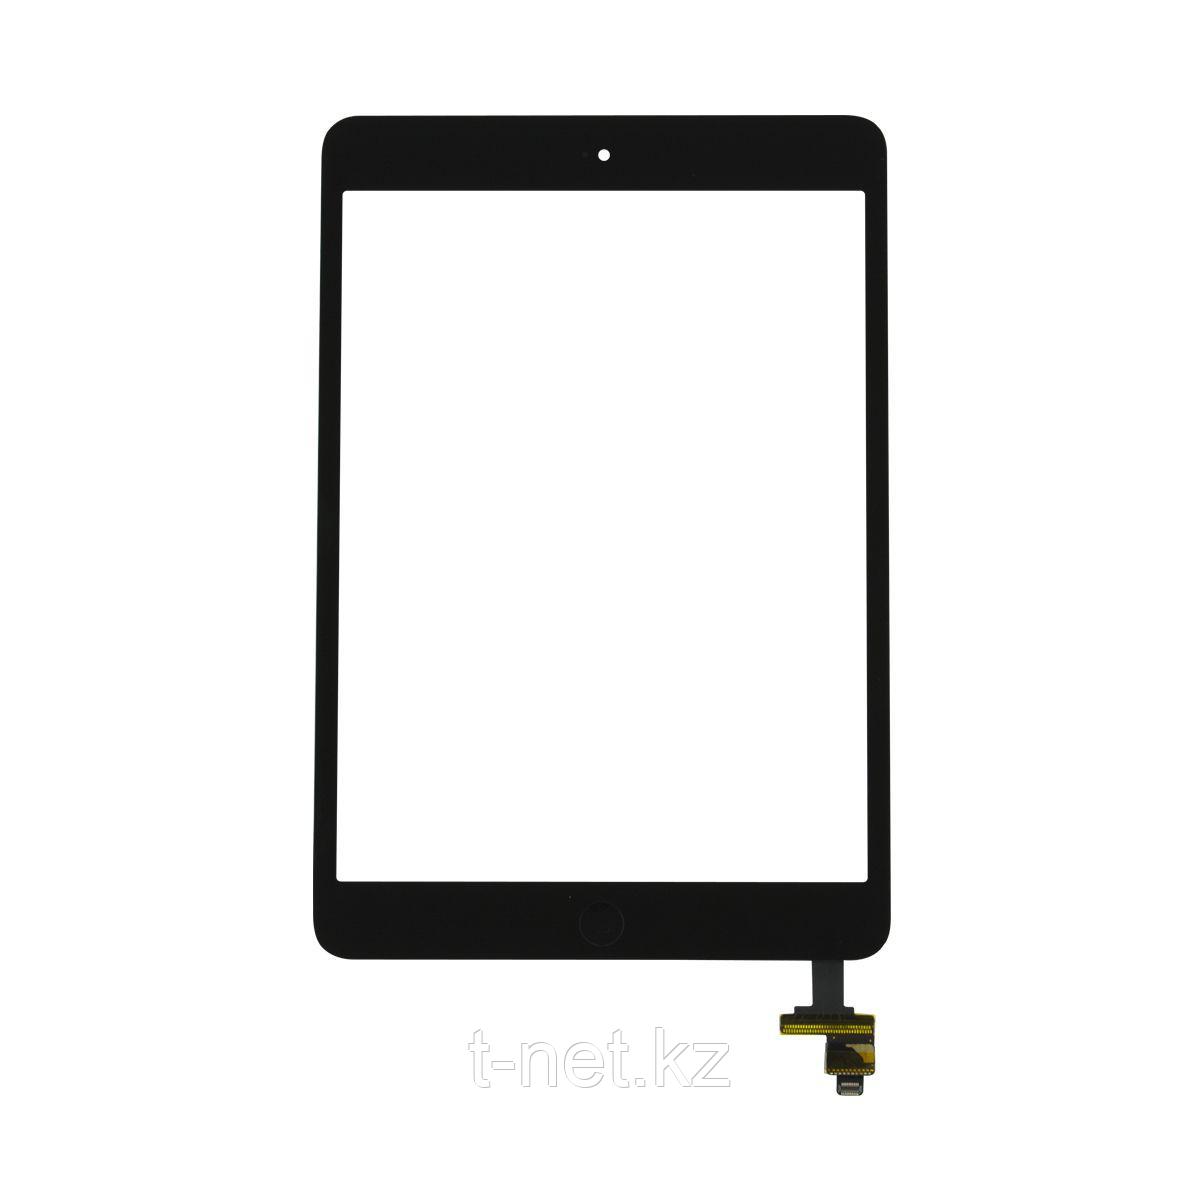 Сенсор Apple iPad Mini/ Mini2, с кнопкой HOME, с коннектором и IC, цвет черный , фото 1